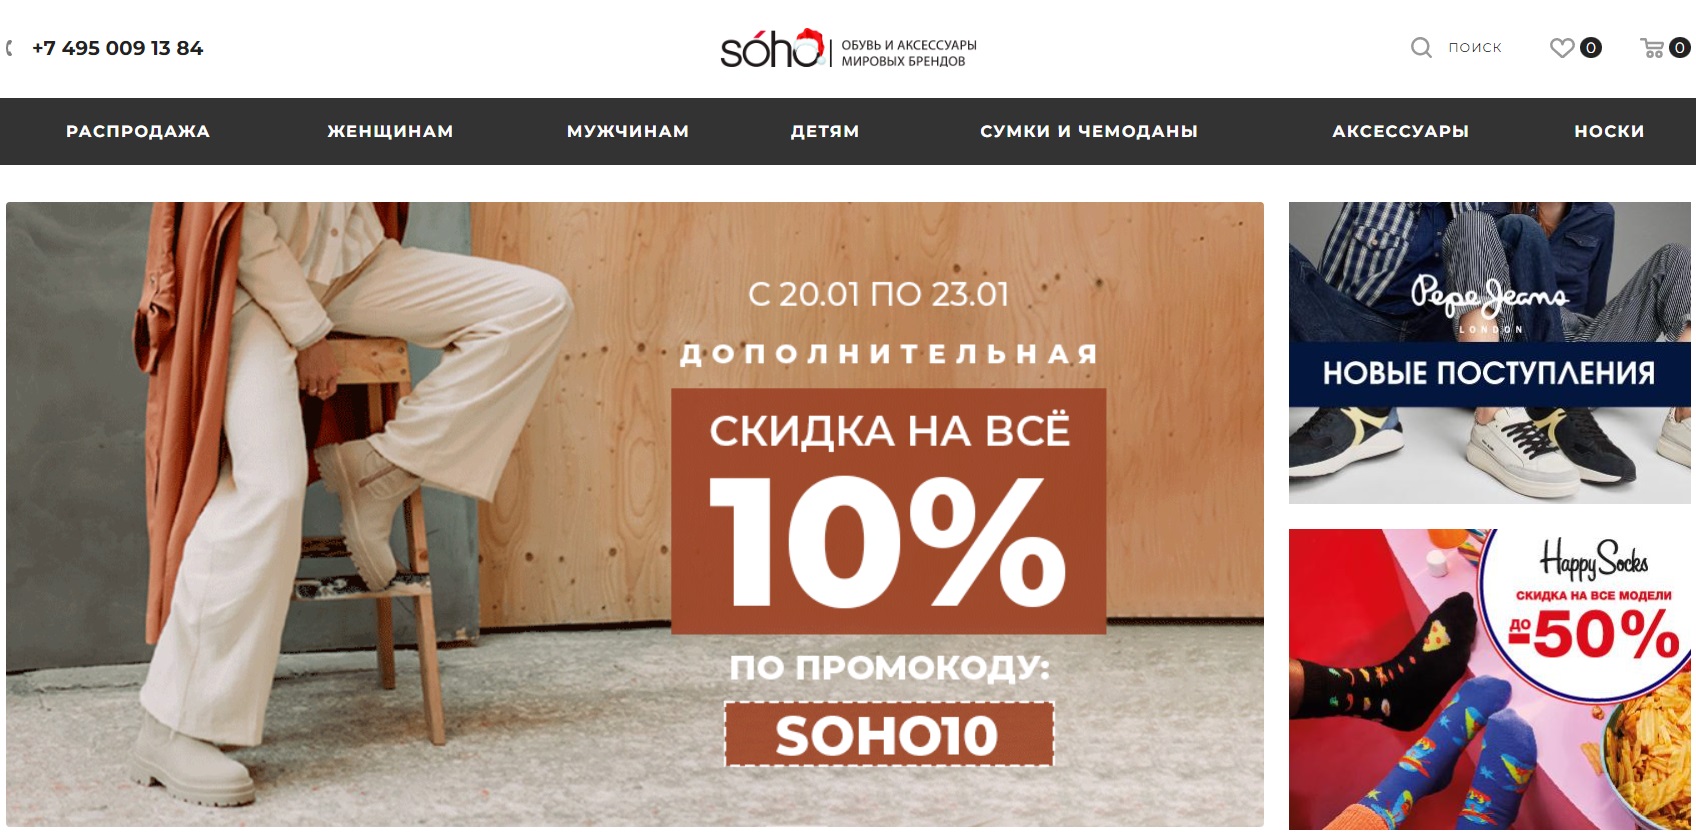 SOHO официальный сайт интернет-магазина